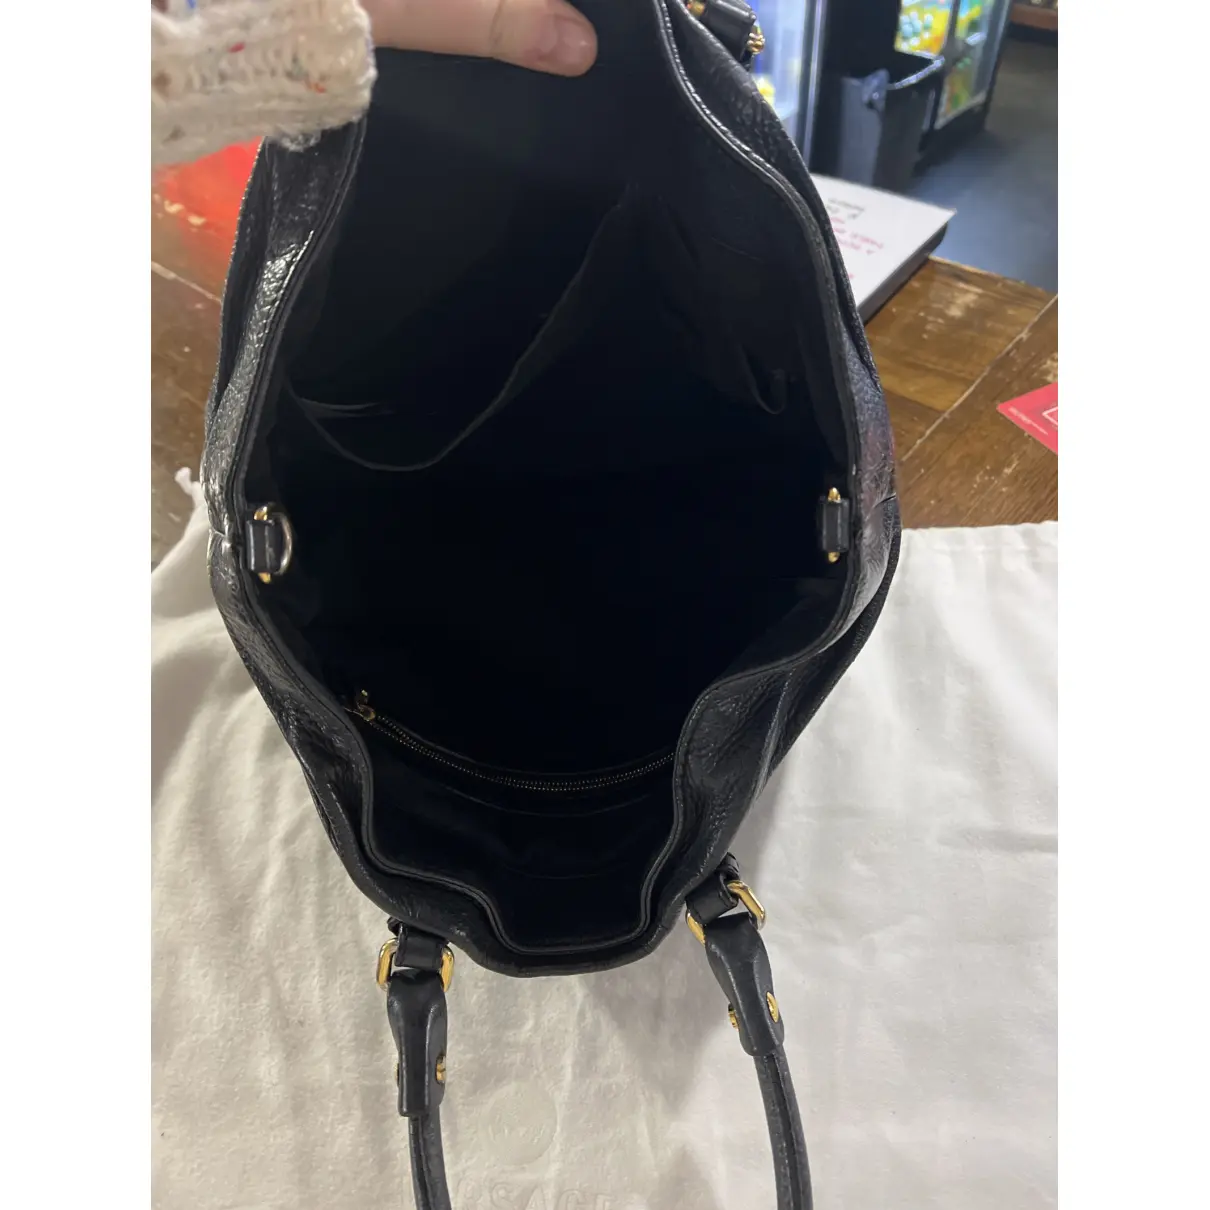 La Medusa leather handbag Versace